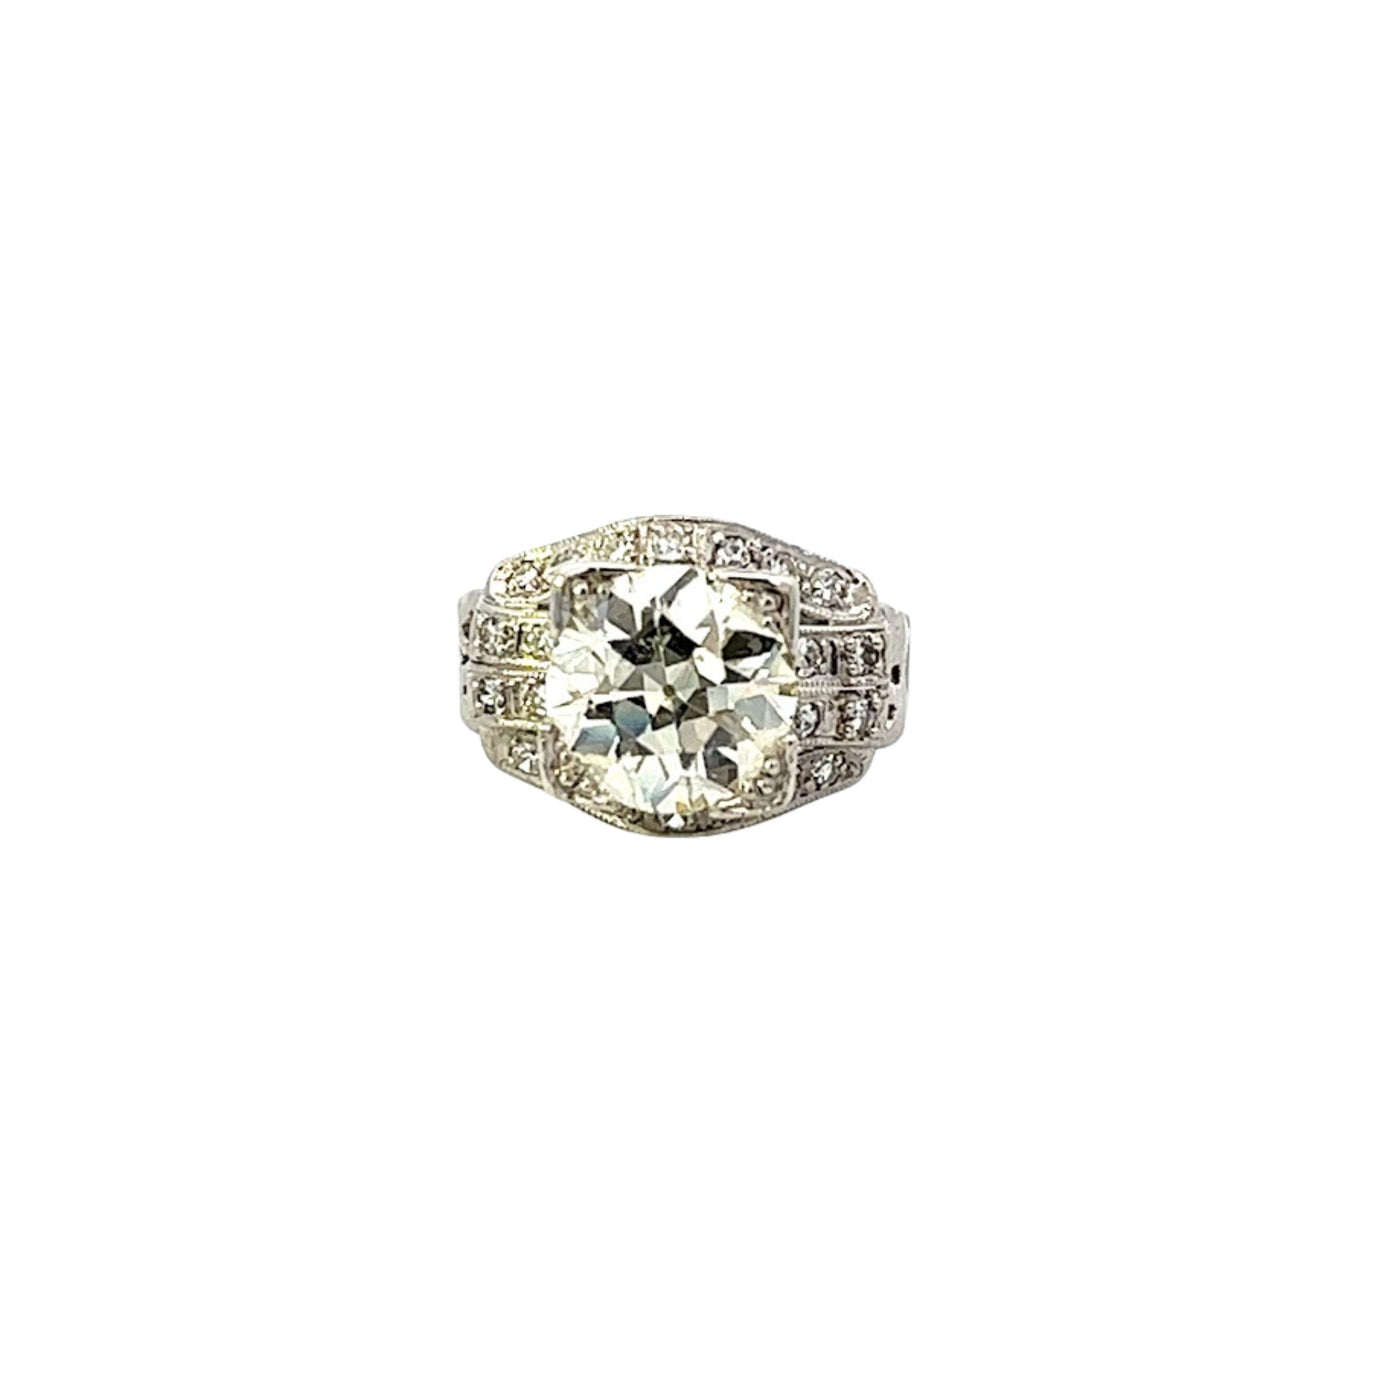 Platinum Estate 2.85ct European Cut Diamond Ring